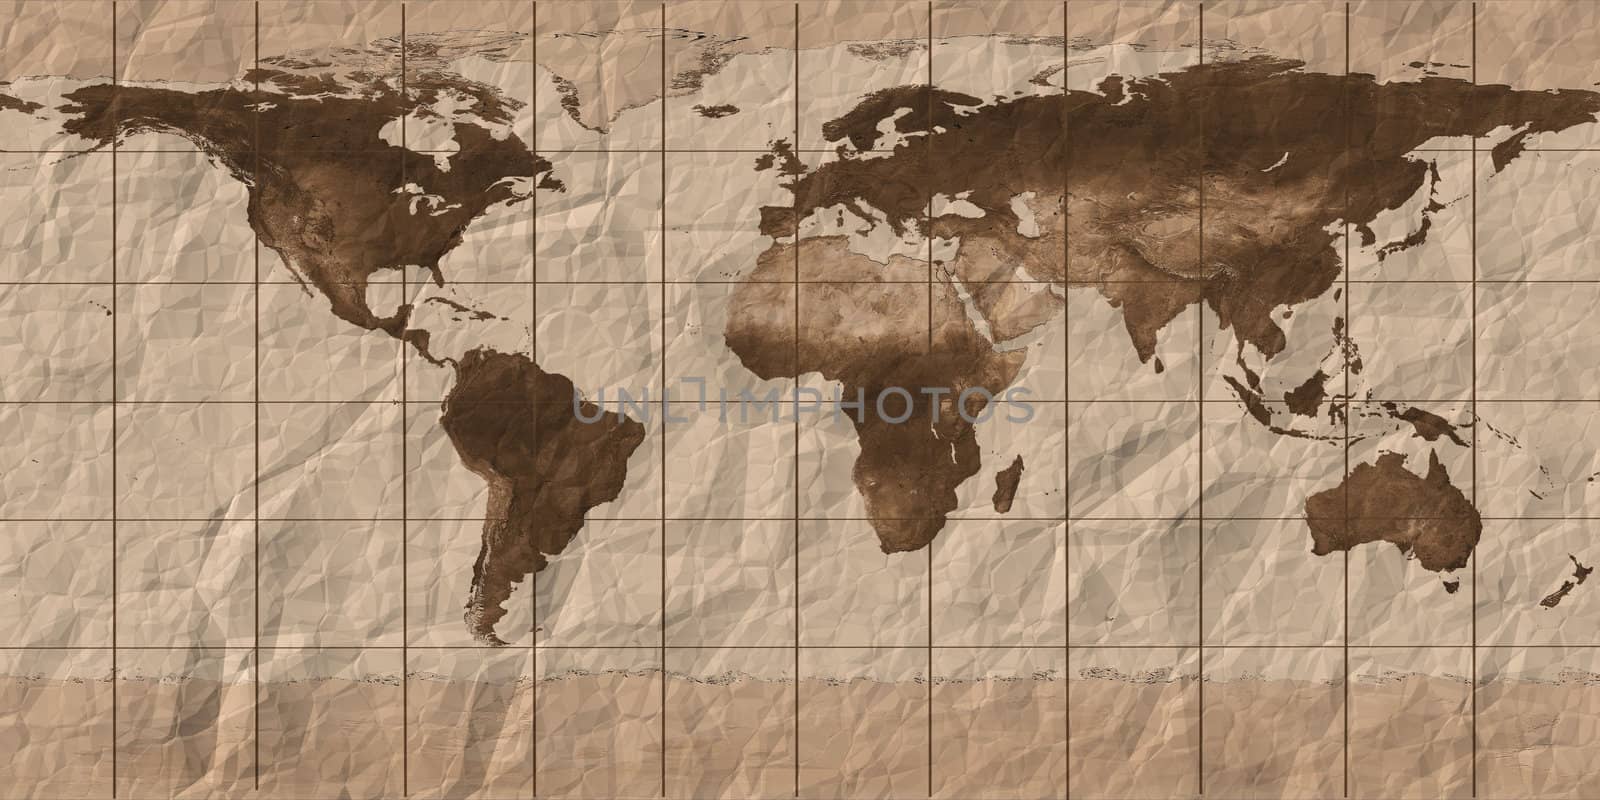 Earth map by njaj